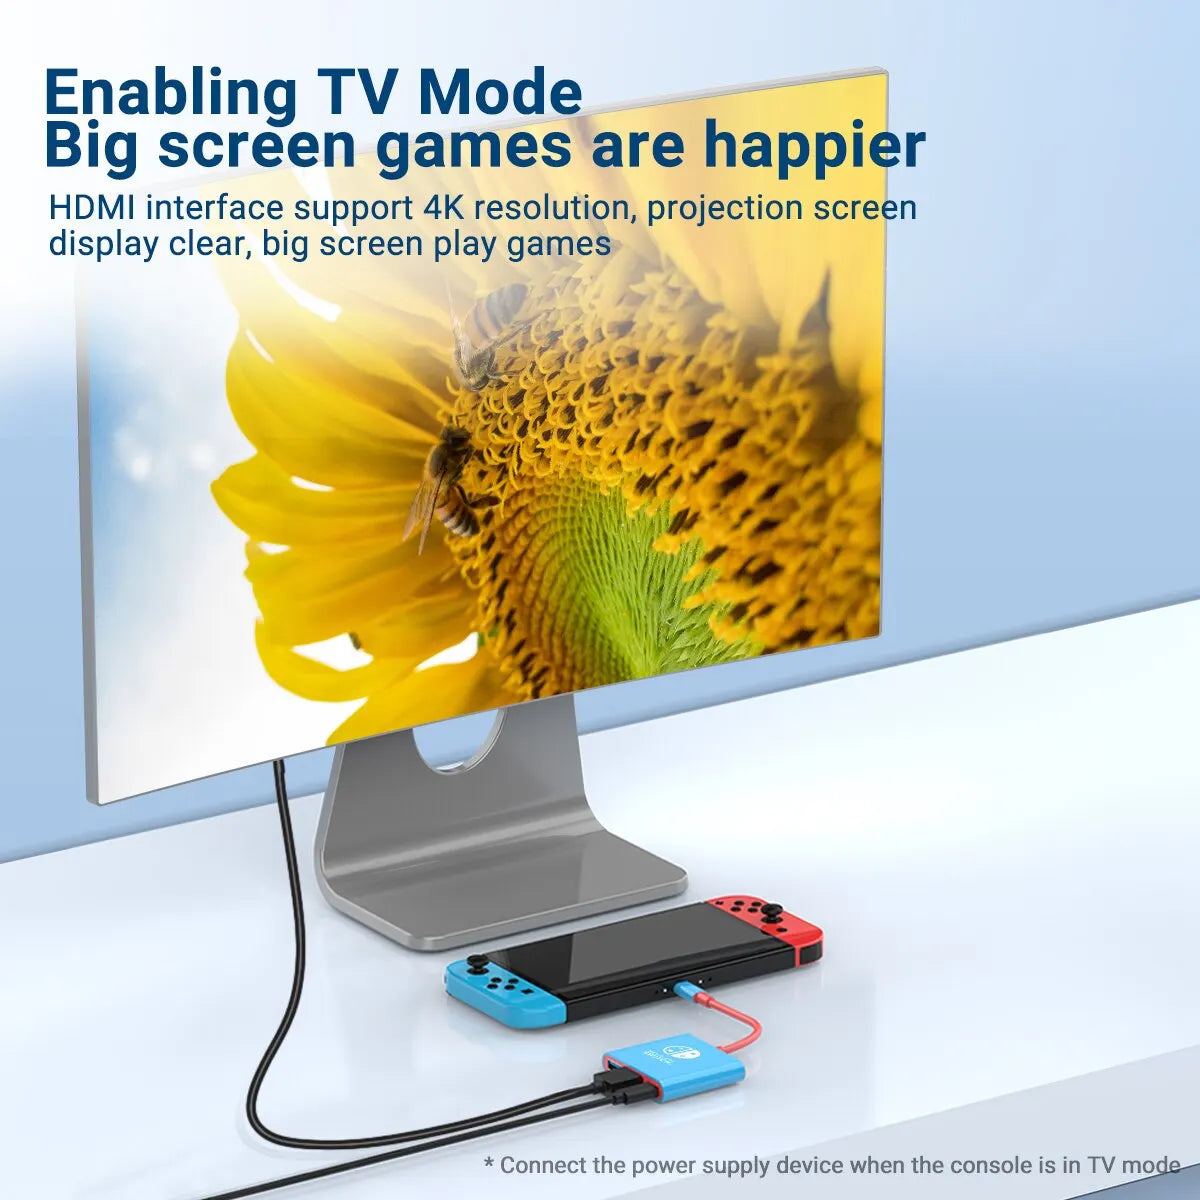 XIBUZZ Adaptateur multiport 3 en 1 compatible avec Nintendo Switch - Hub USB-C avec HDMI et USB 3.0 parfait pour les voyages et les jeux